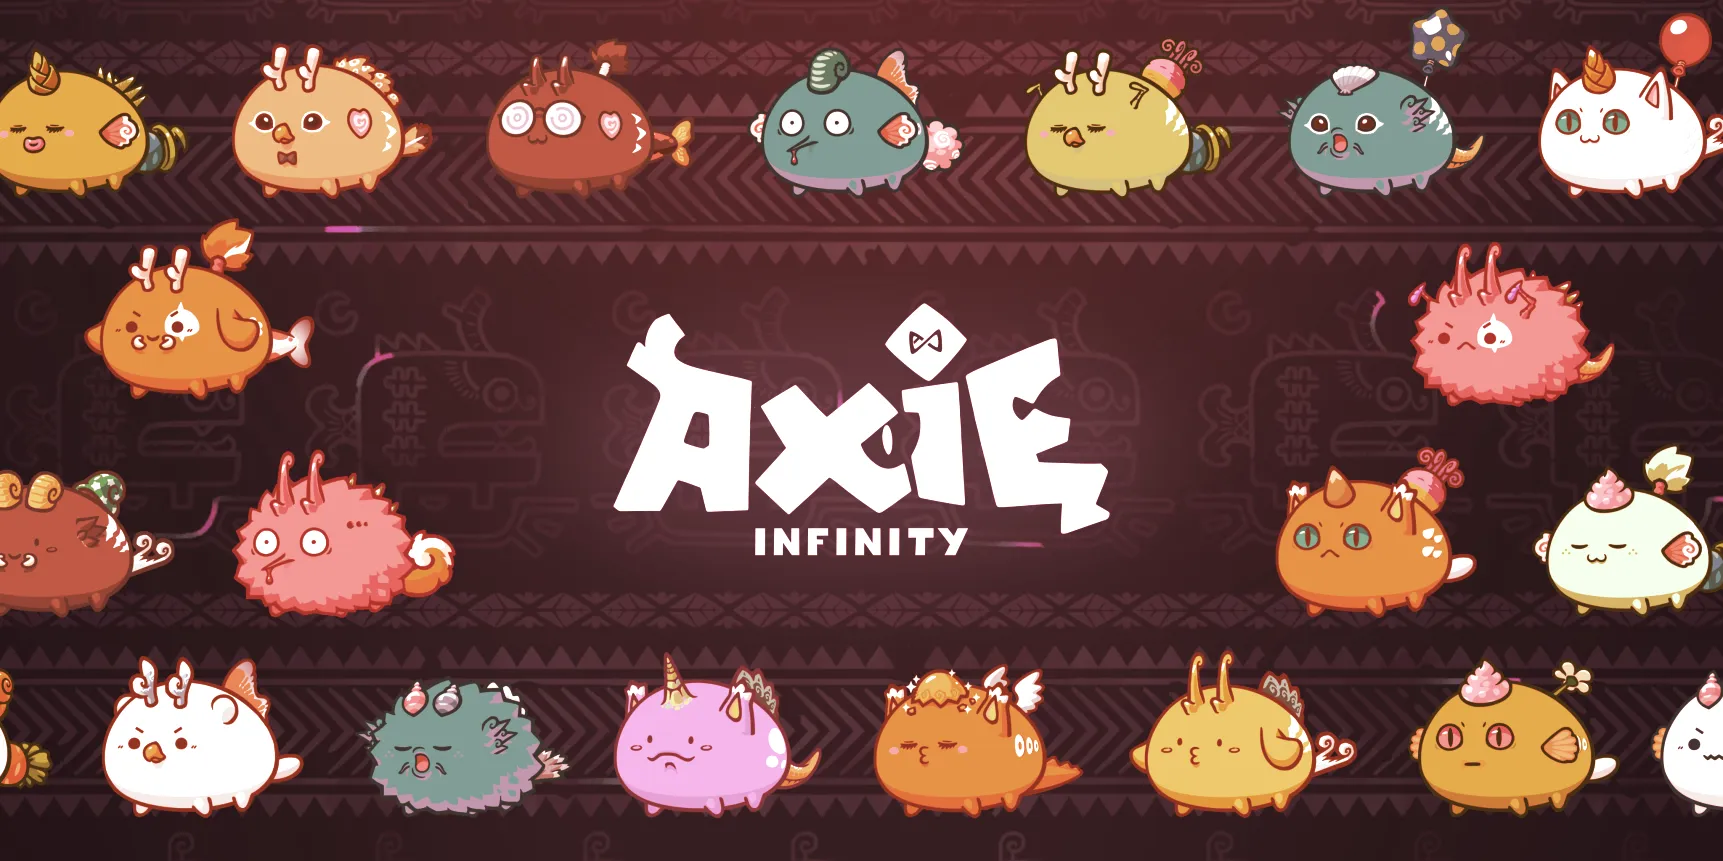 Axie Infinity es un juego cada vez más popular basado en Ethereum. Imagen: Axie Infinity